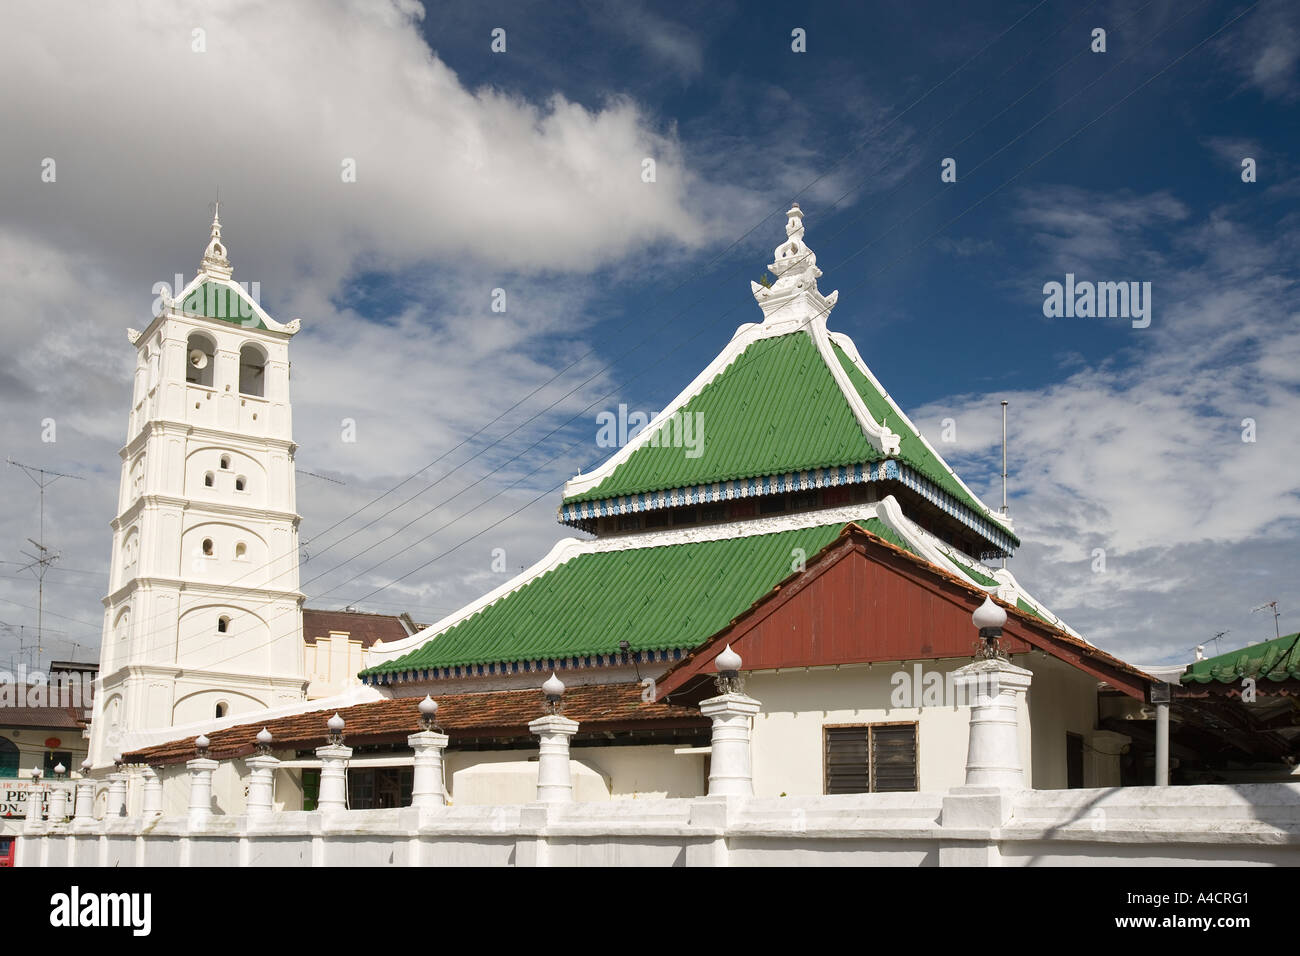 Malaysia Melaka Jalan Lakiu Kampung Klings Mosque Stock Photo